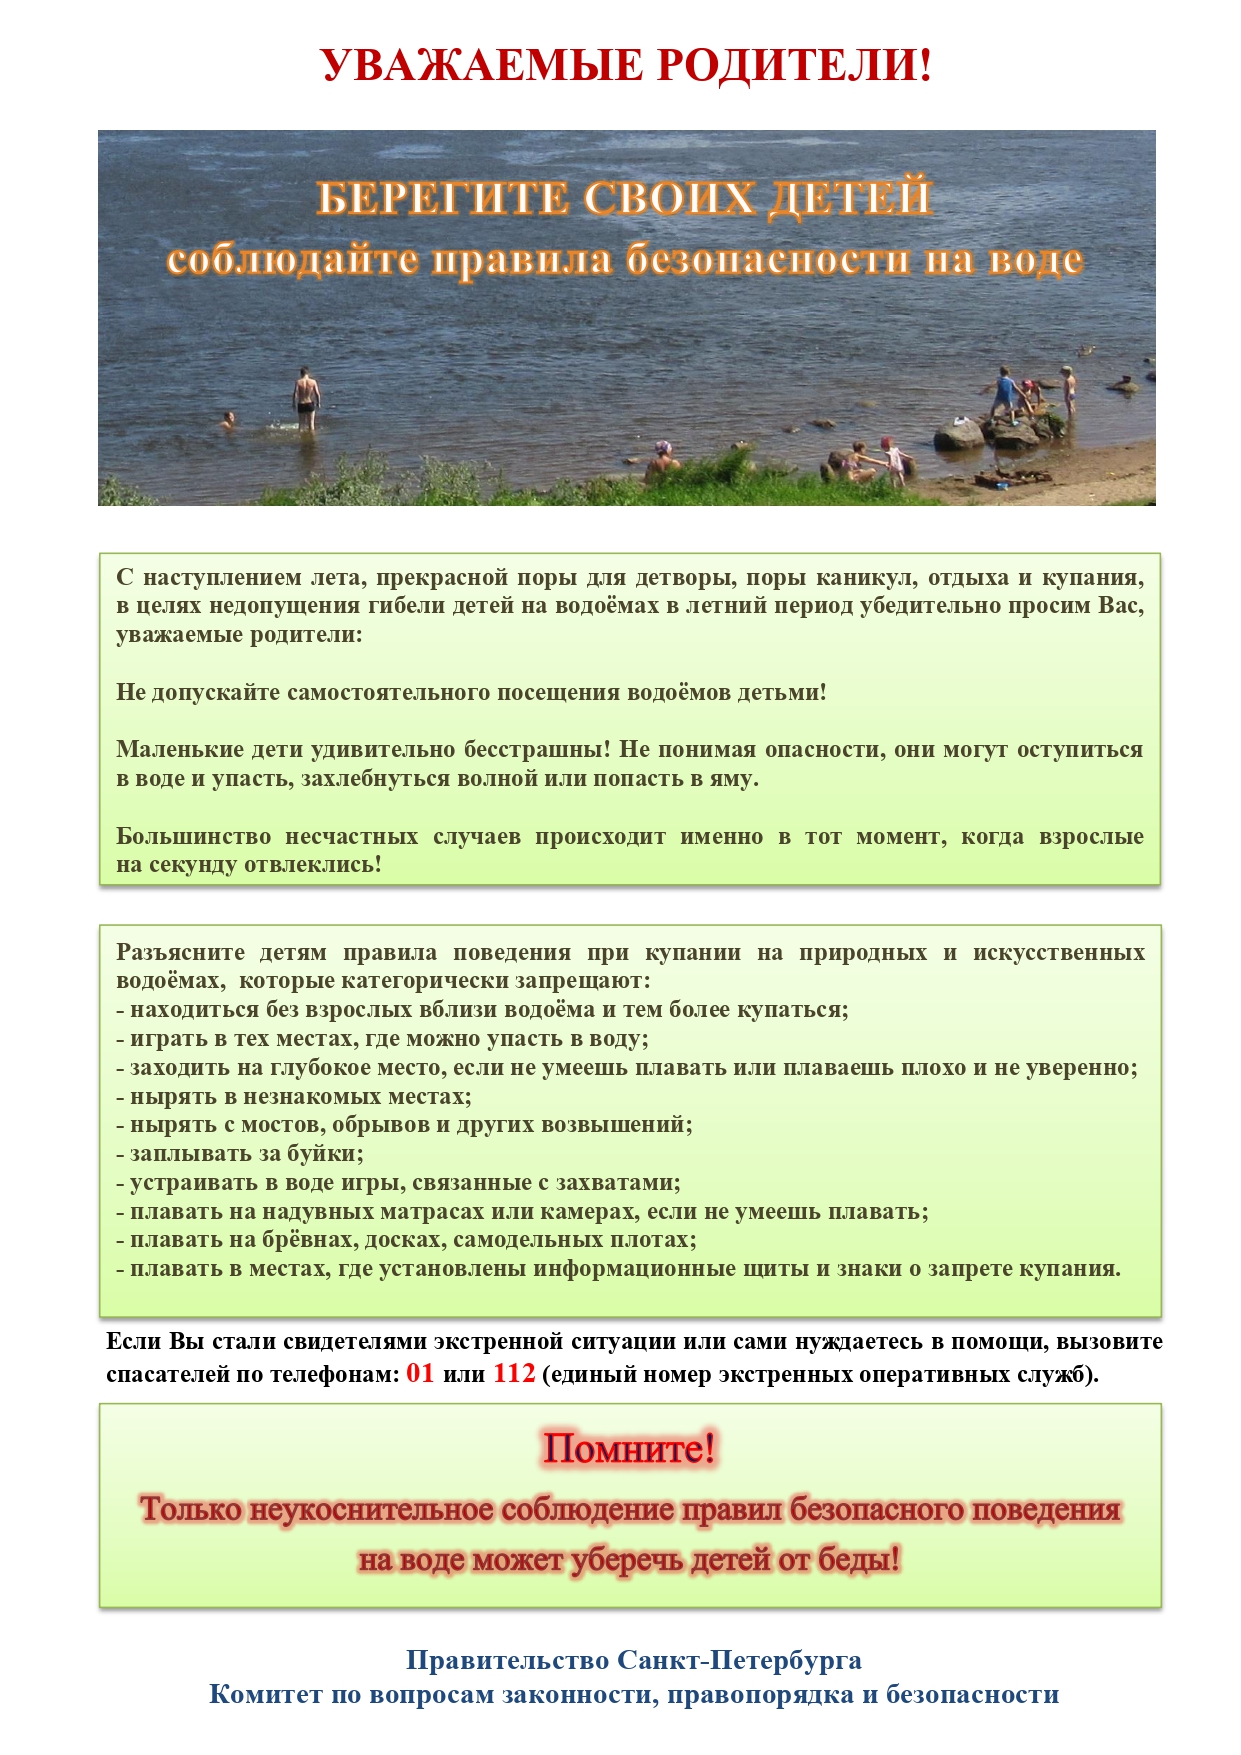 Памятка родителям по запрету купания в неотведённых местах 2021  page-0001